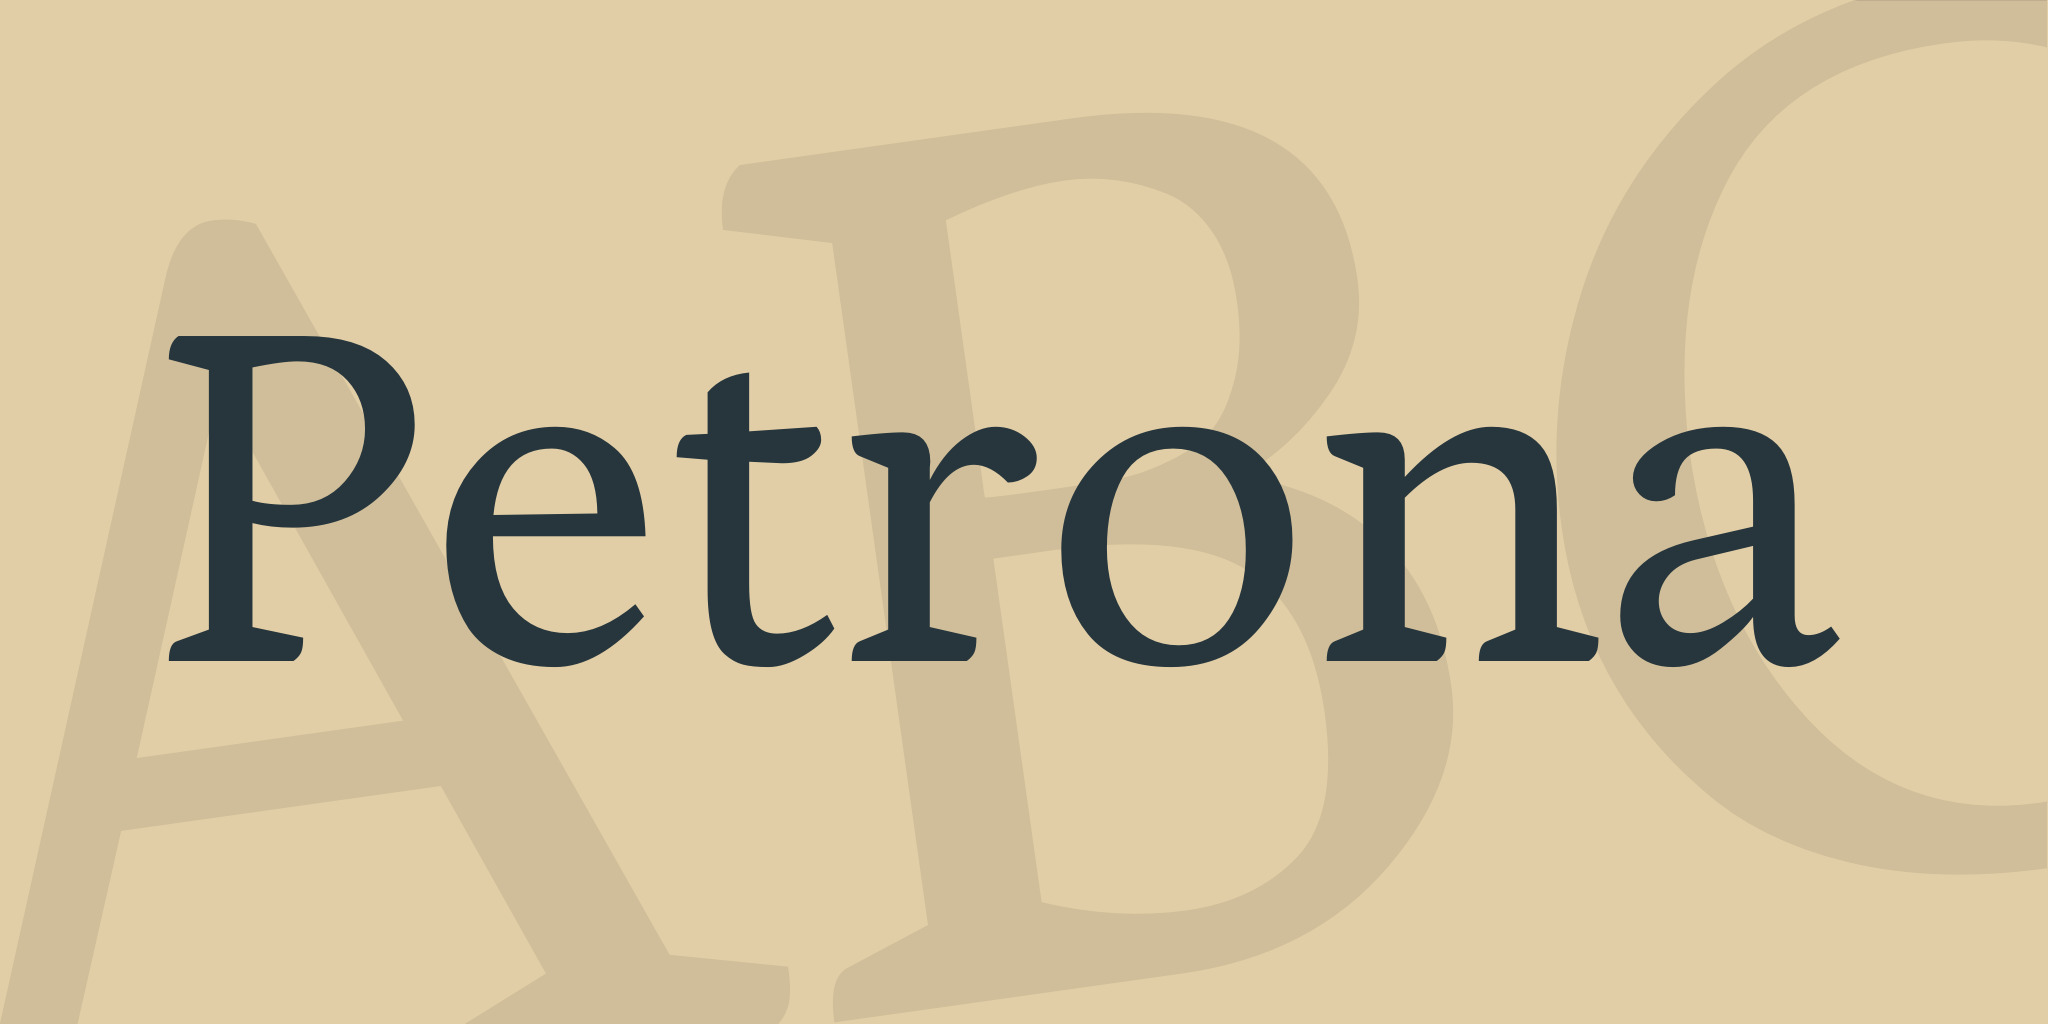 Petrona